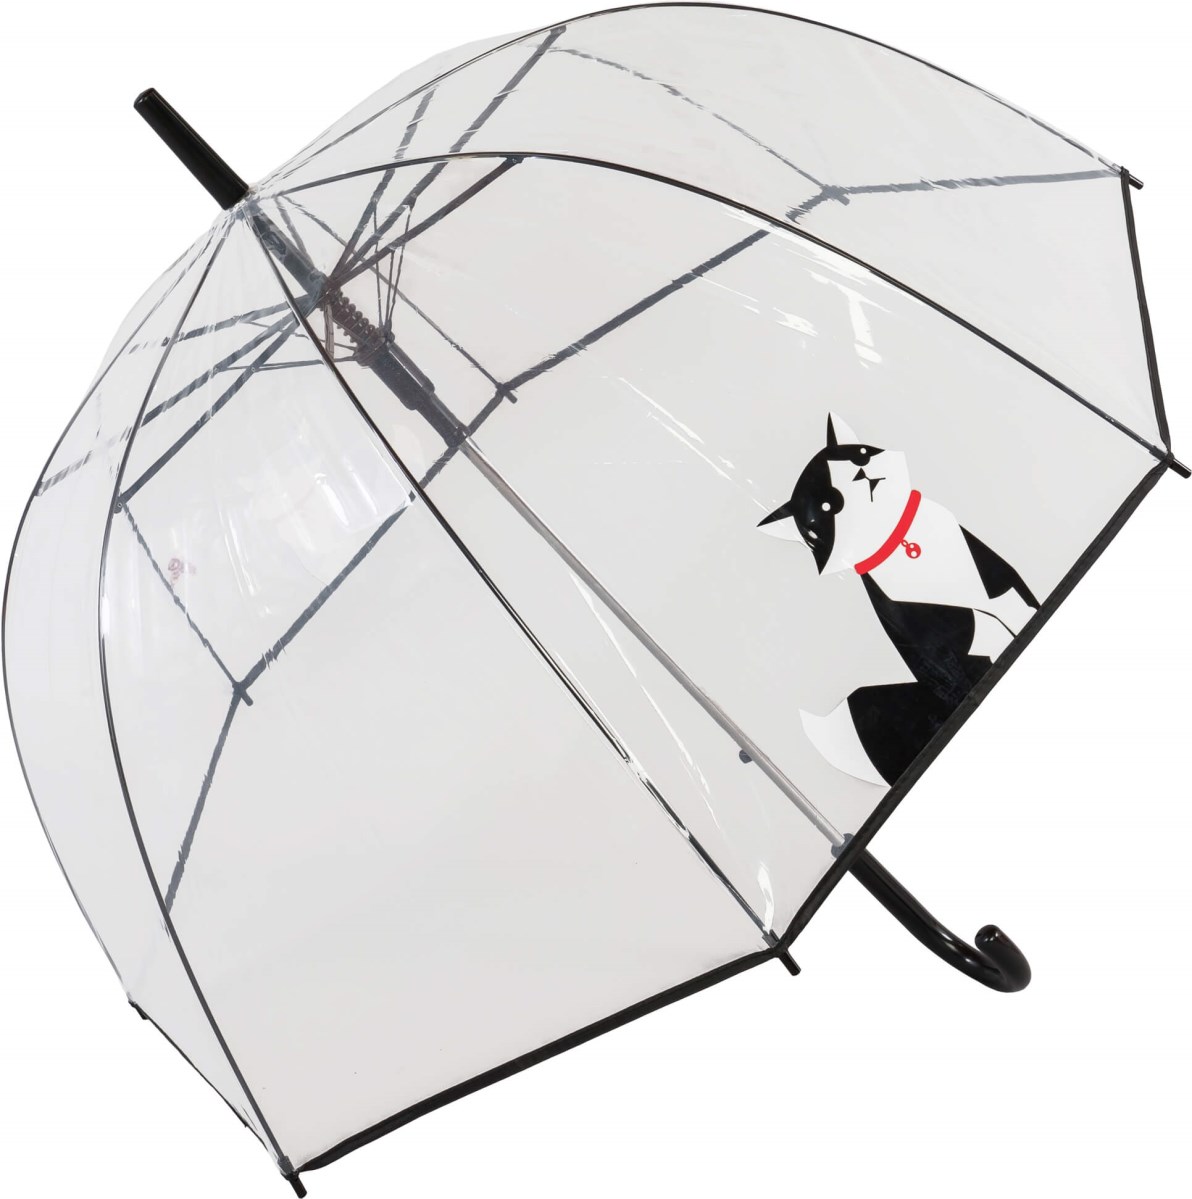 Auto Black Cat Clear Dome Umbrella (18016)